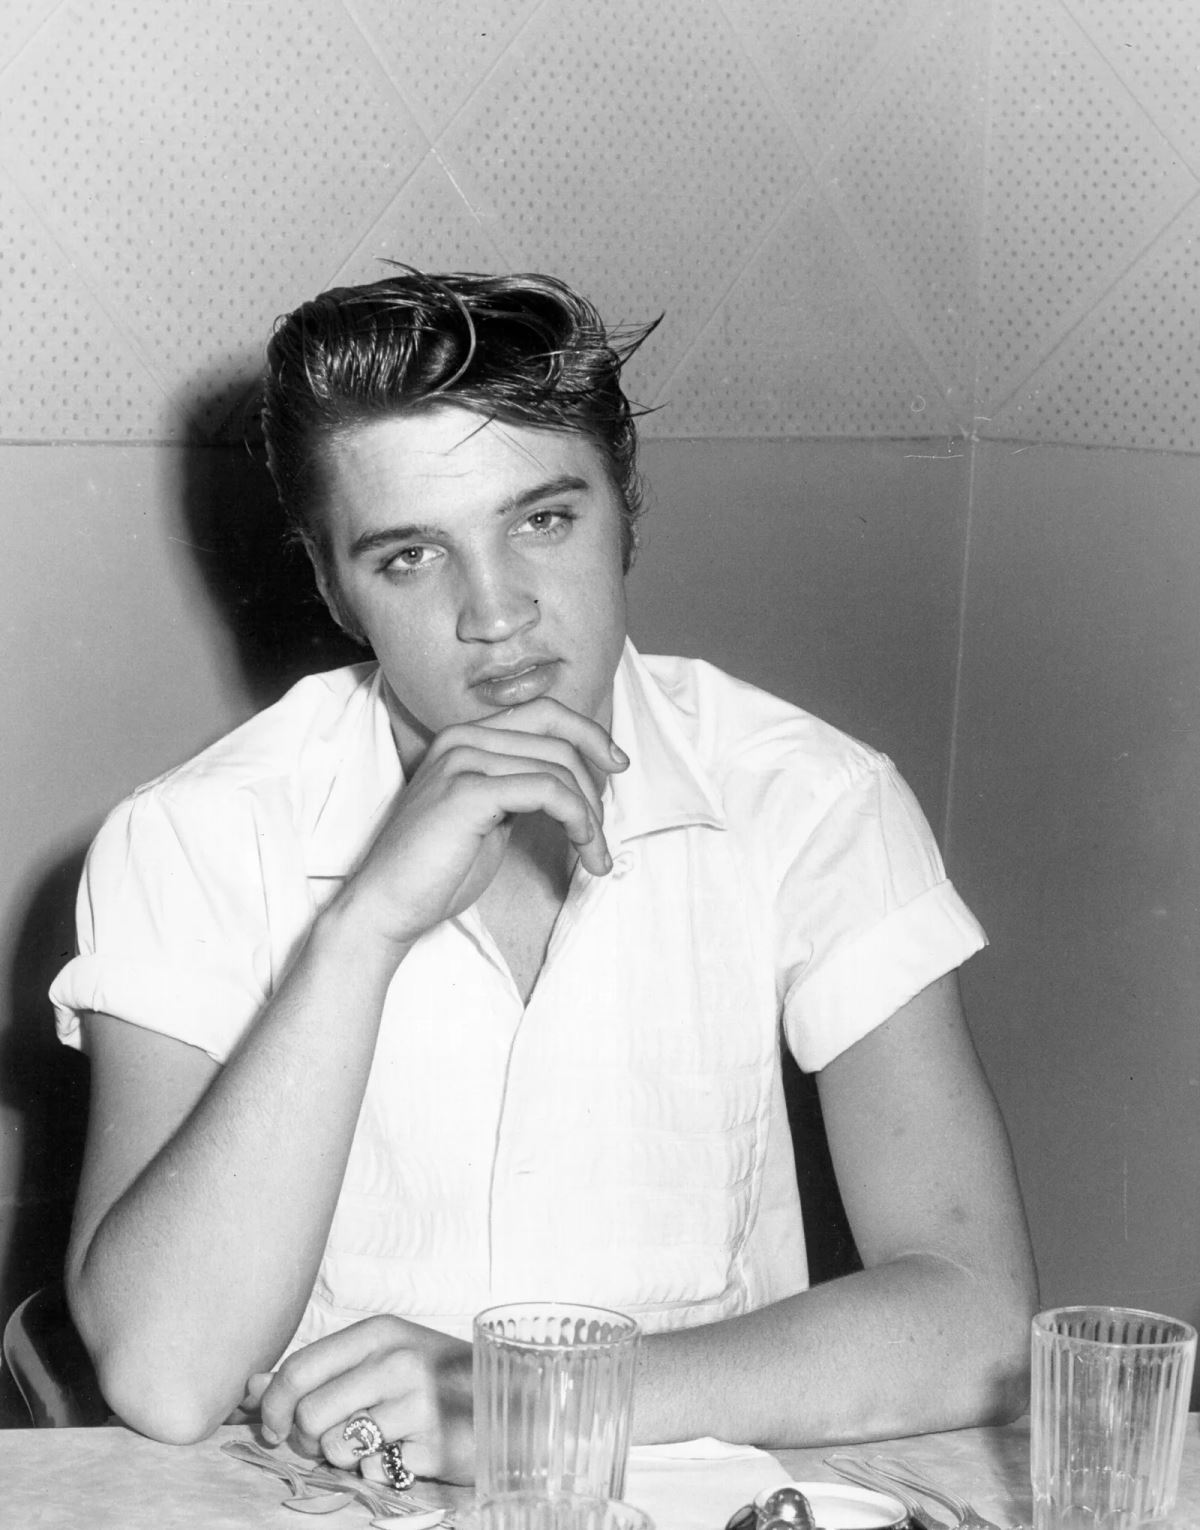 <p><strong>9. Oyuncu olarak ünlenmek istedi</strong></p> <p>Elvis ayrıca başarılı bir oyunculuk kariyeri başlattı ve aktör olarak görülmeyi arzuladı. <strong>Jailhouse Rock (1957), King Creole (1958) ve Viva Las Vegas  (1964)</strong> gibi başarılı filmler de olmak üzere 1956-1973 yılları arasında tam 31 filmde rol aldı .</p> <p><strong>Elvis,</strong> oyunculuğu müzik kariyerinin bir sonraki doğal adımı olarak görse de, kısa süre sonra sektörde hayal kırıklığına uğradı. Menajeri Albay Parker'ın ağır etkisi altında kalan Elvis, büyük kâr getiren film müziklerinin satışından dolayı, sürekli olarak romantik olay örgüsüne sahip bir dizi müzikalde yer almak zorunda kaldı.</p> <p>Ne yazık ki kendisine hiçbir zaman ciddi, şarkı söylemeyen bir rol oynama fırsatı sunulmadı.</p>